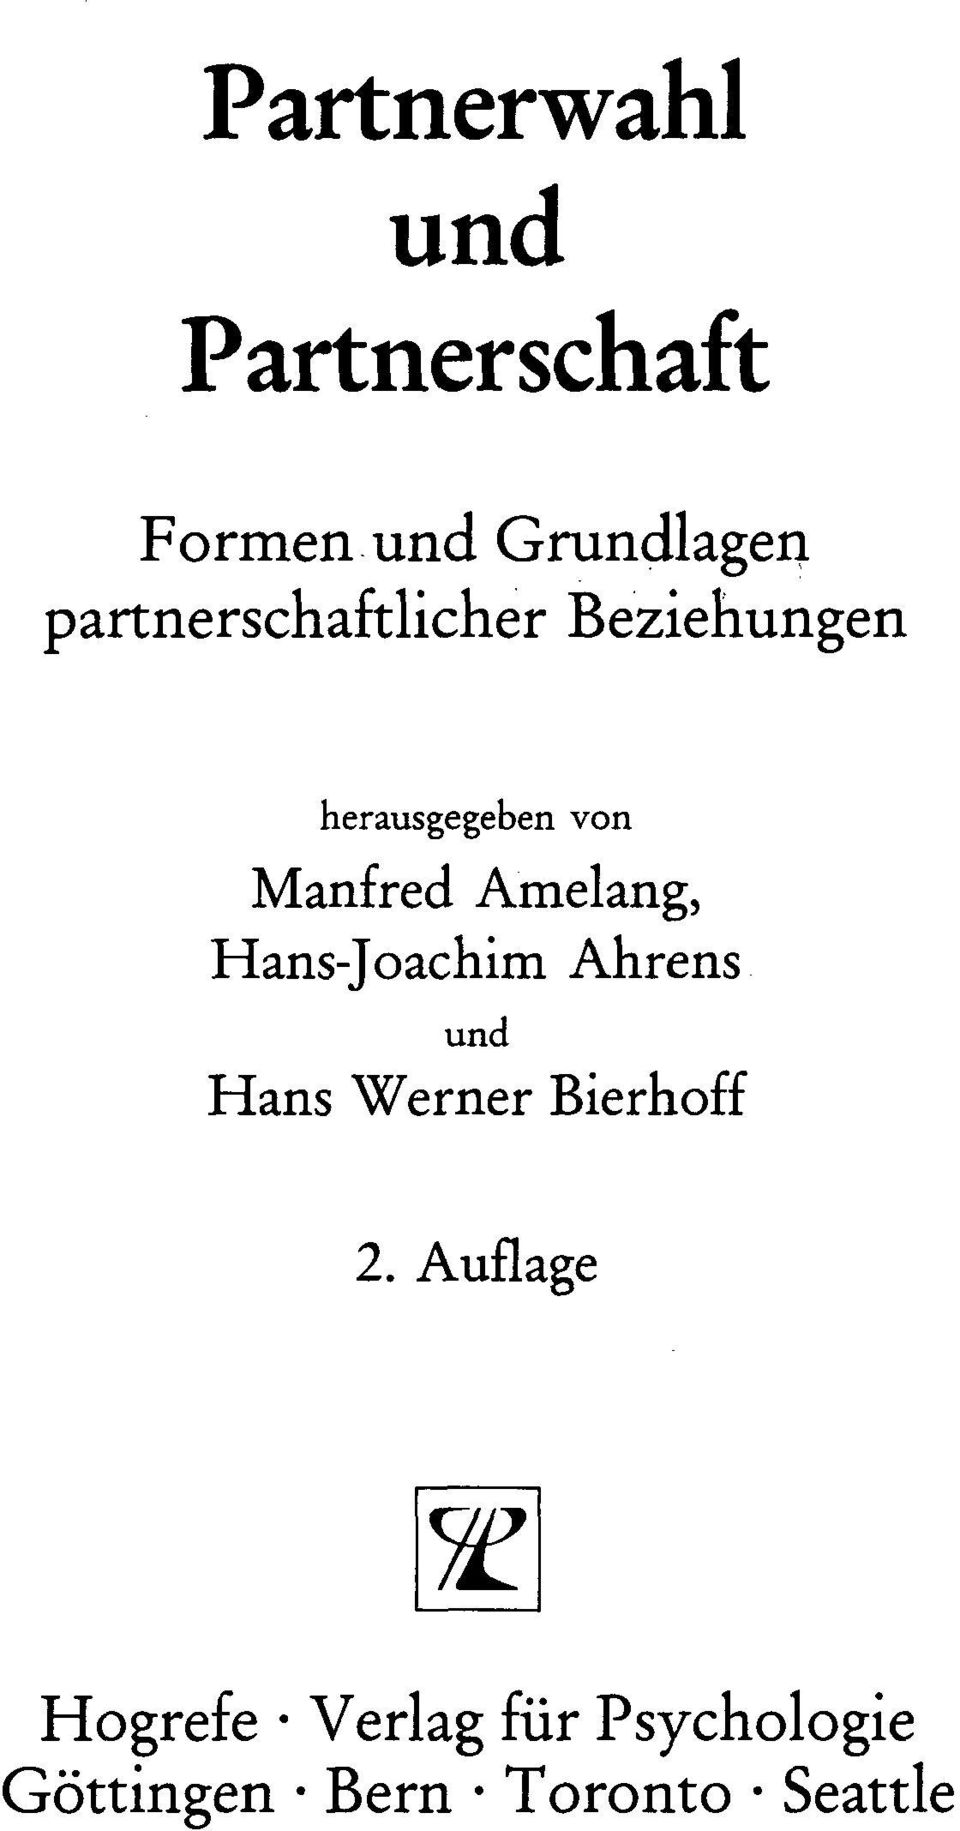 Amelang, Hans-Joachim Ahrens und Hans Werner Bierhoff 2.